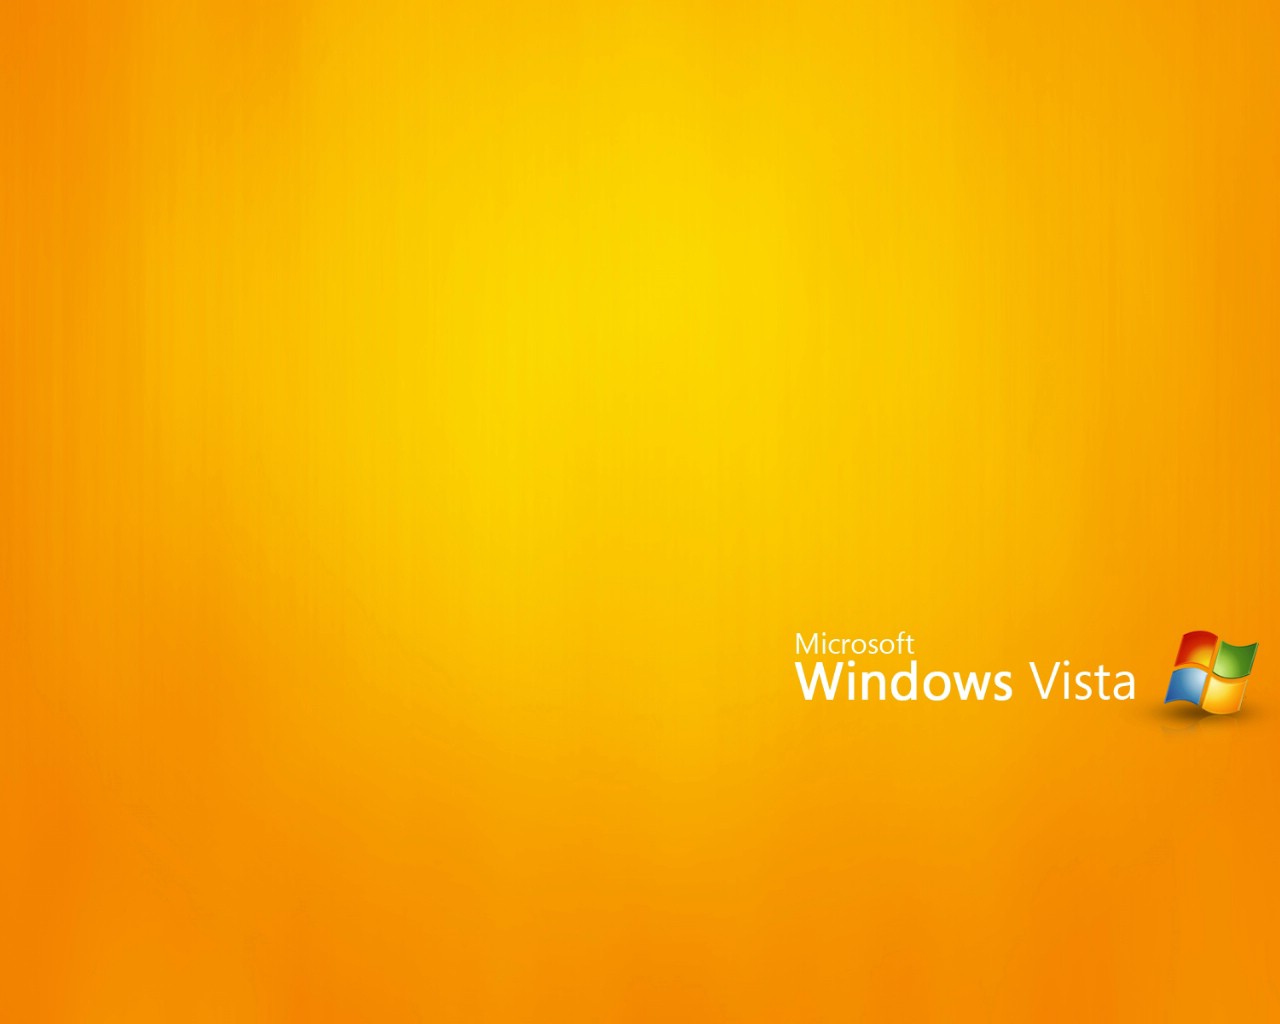 壁纸1280x1024Windows Vista壁纸 壁纸16壁纸 Windows Vista壁纸壁纸 Windows Vista壁纸图片 Windows Vista壁纸素材 系统壁纸 系统图库 系统图片素材桌面壁纸